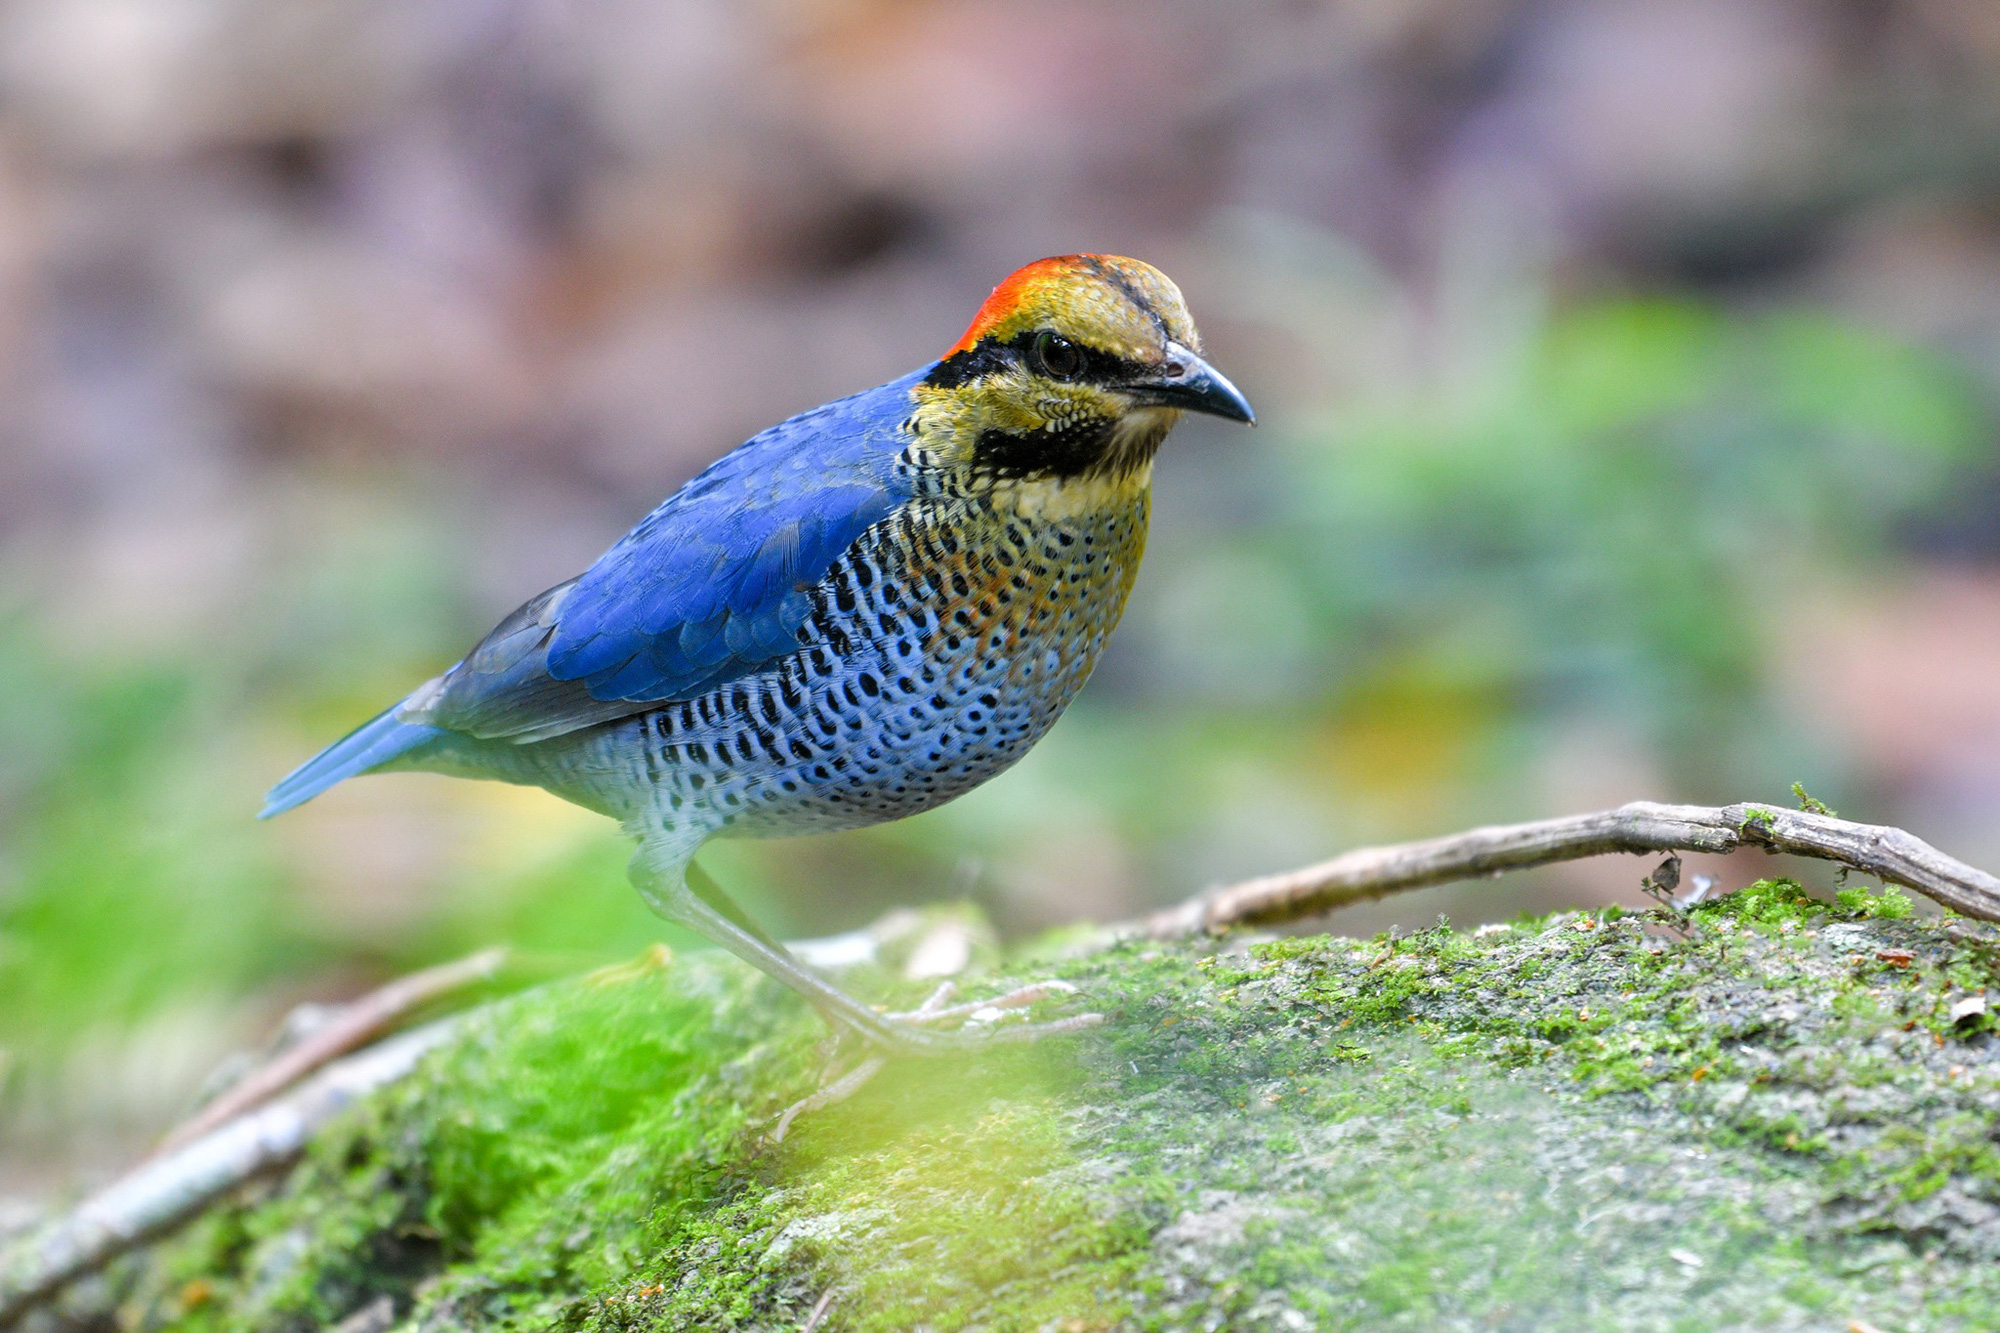 Vườn quốc gia là một trong những vùng chim quan trọng và đa dạng nhất của Việt Nam, với 326 loài thuộc 54 họ - Ảnh: VQG cung cấp